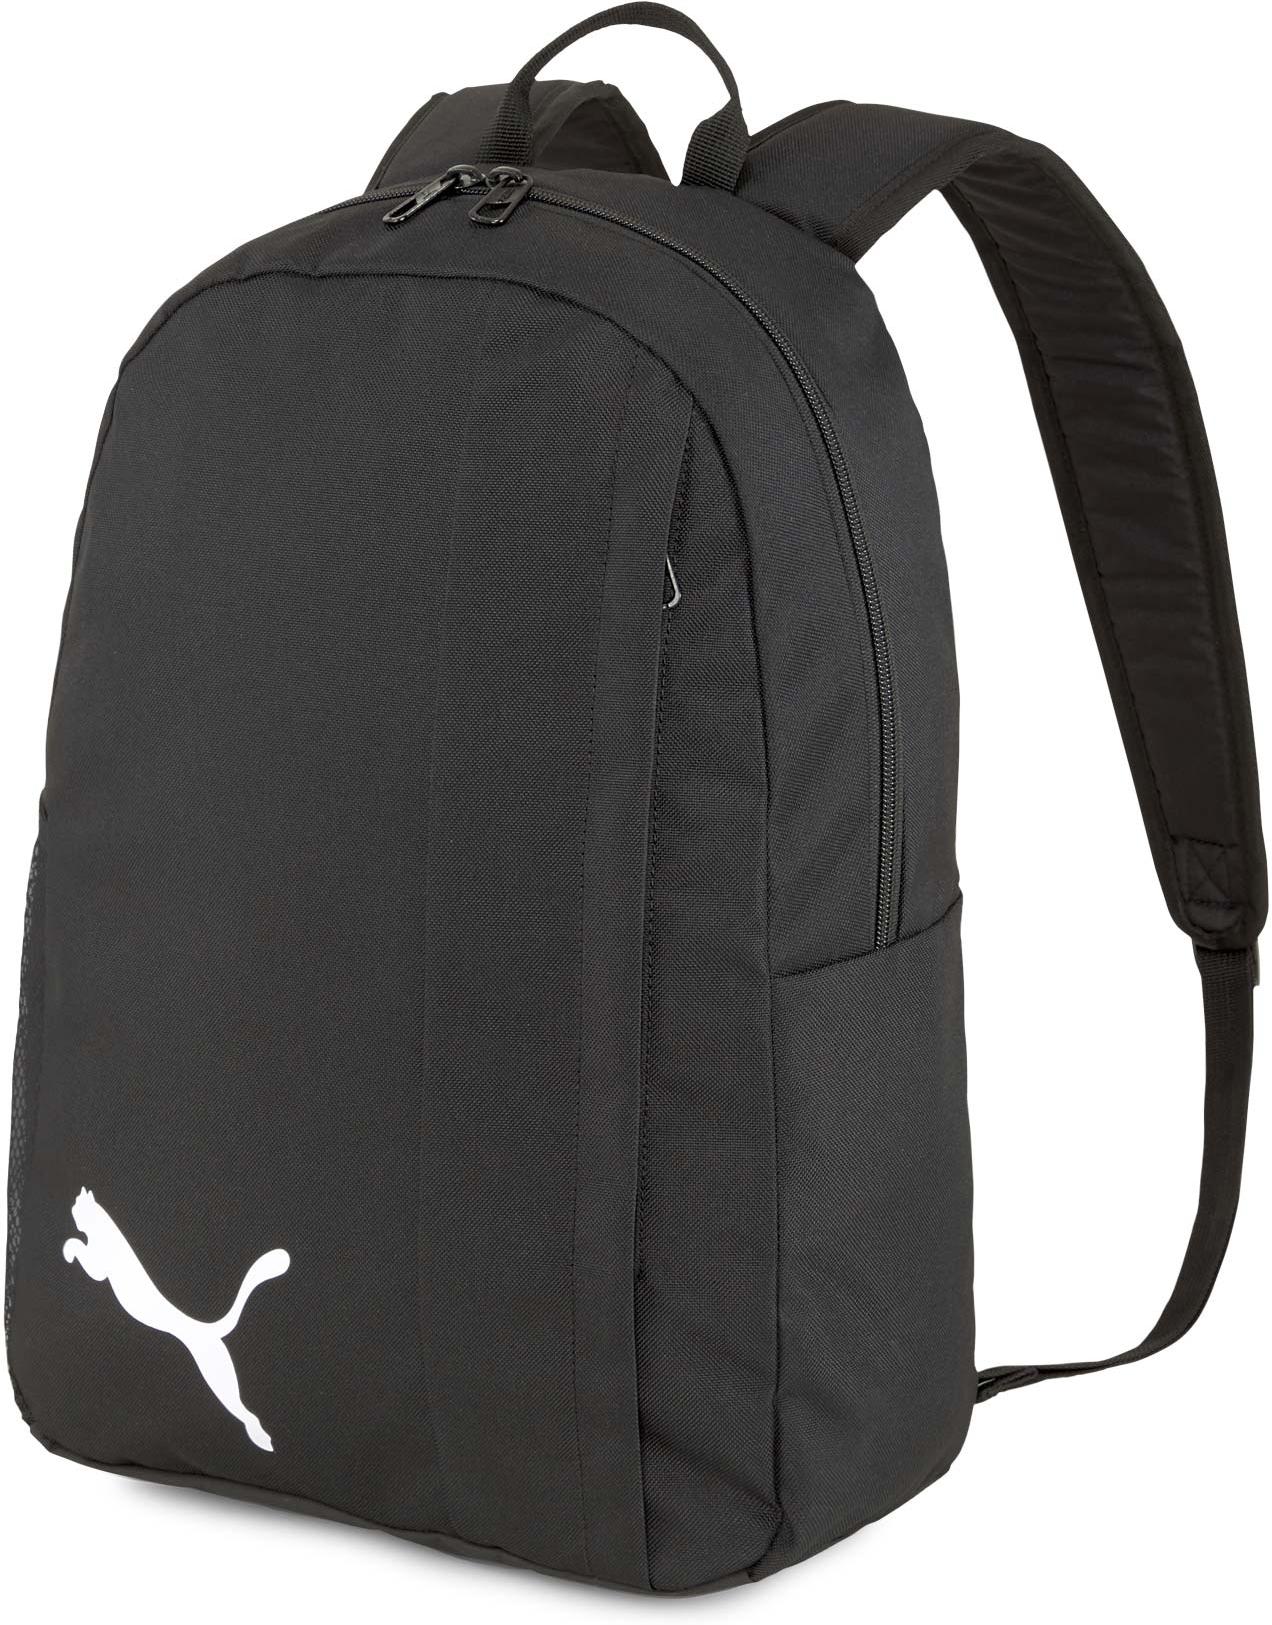 Plecak Puma teamGOAL 23 Backpack